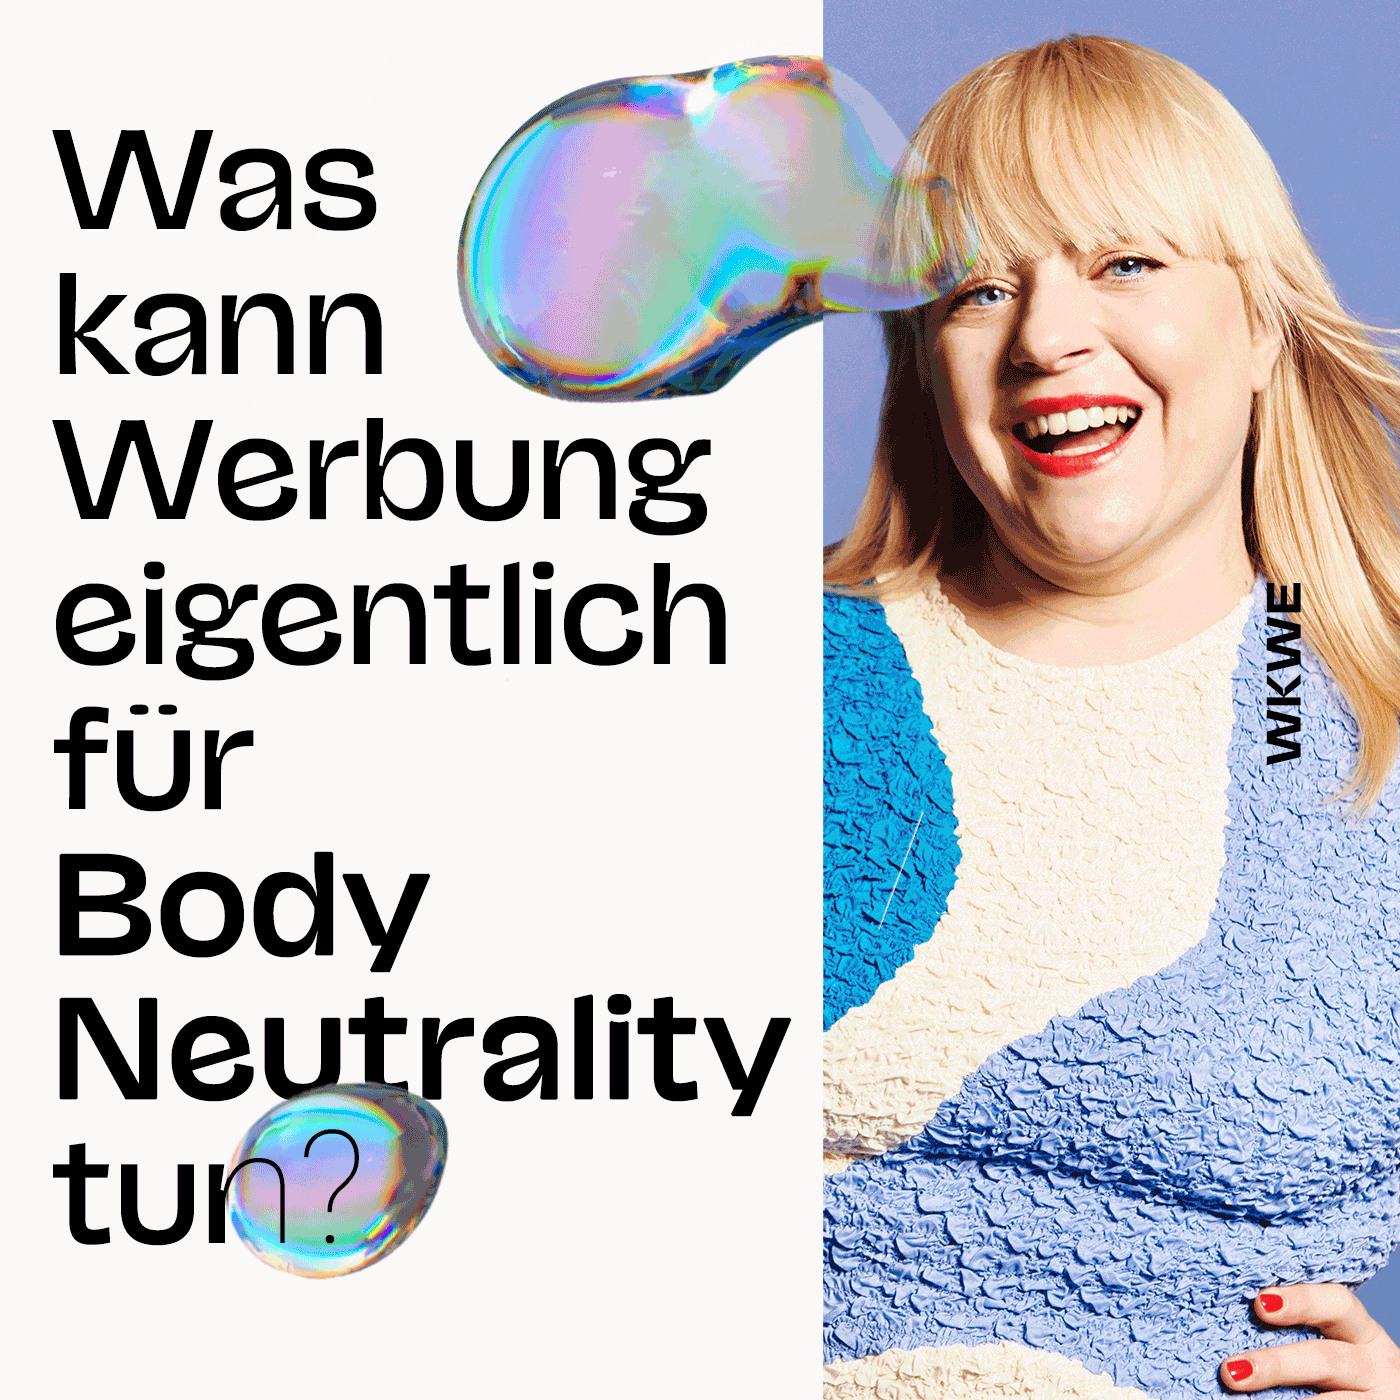 Was kann Werbung eigentlich für Body Neutrality tun, Melodie Michelberger?